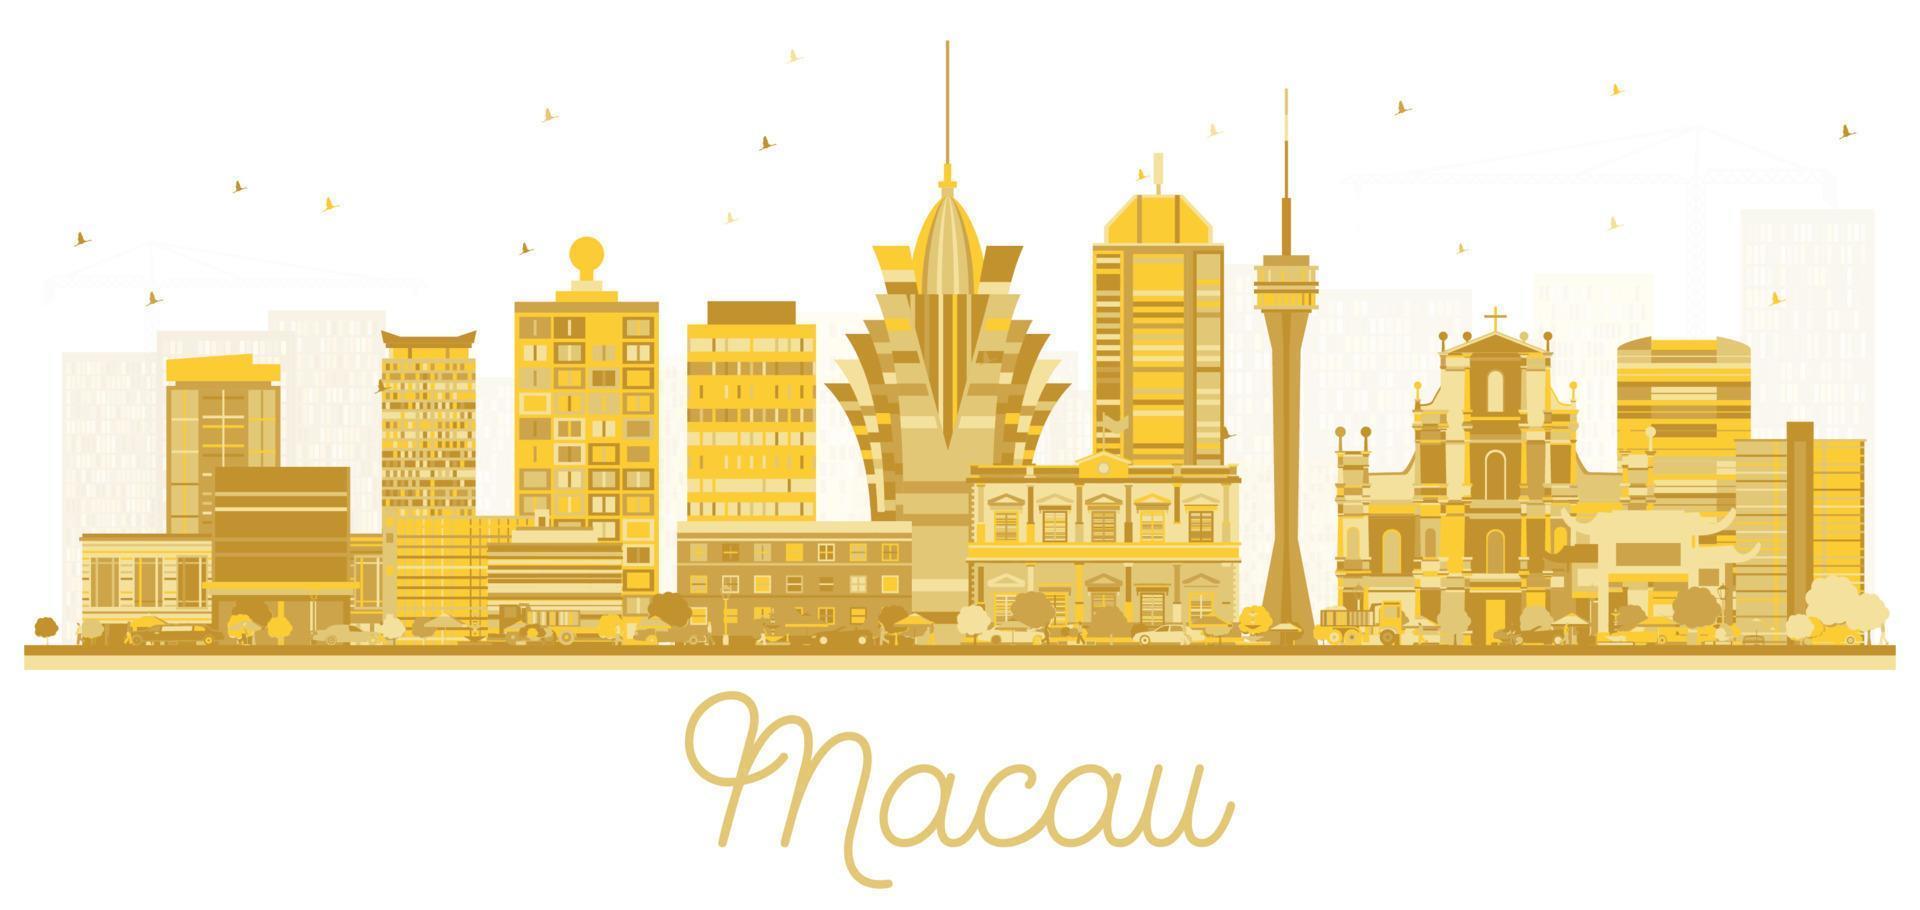 macau china city skyline silhouette mit goldenen gebäuden isoliert auf weiß. vektor